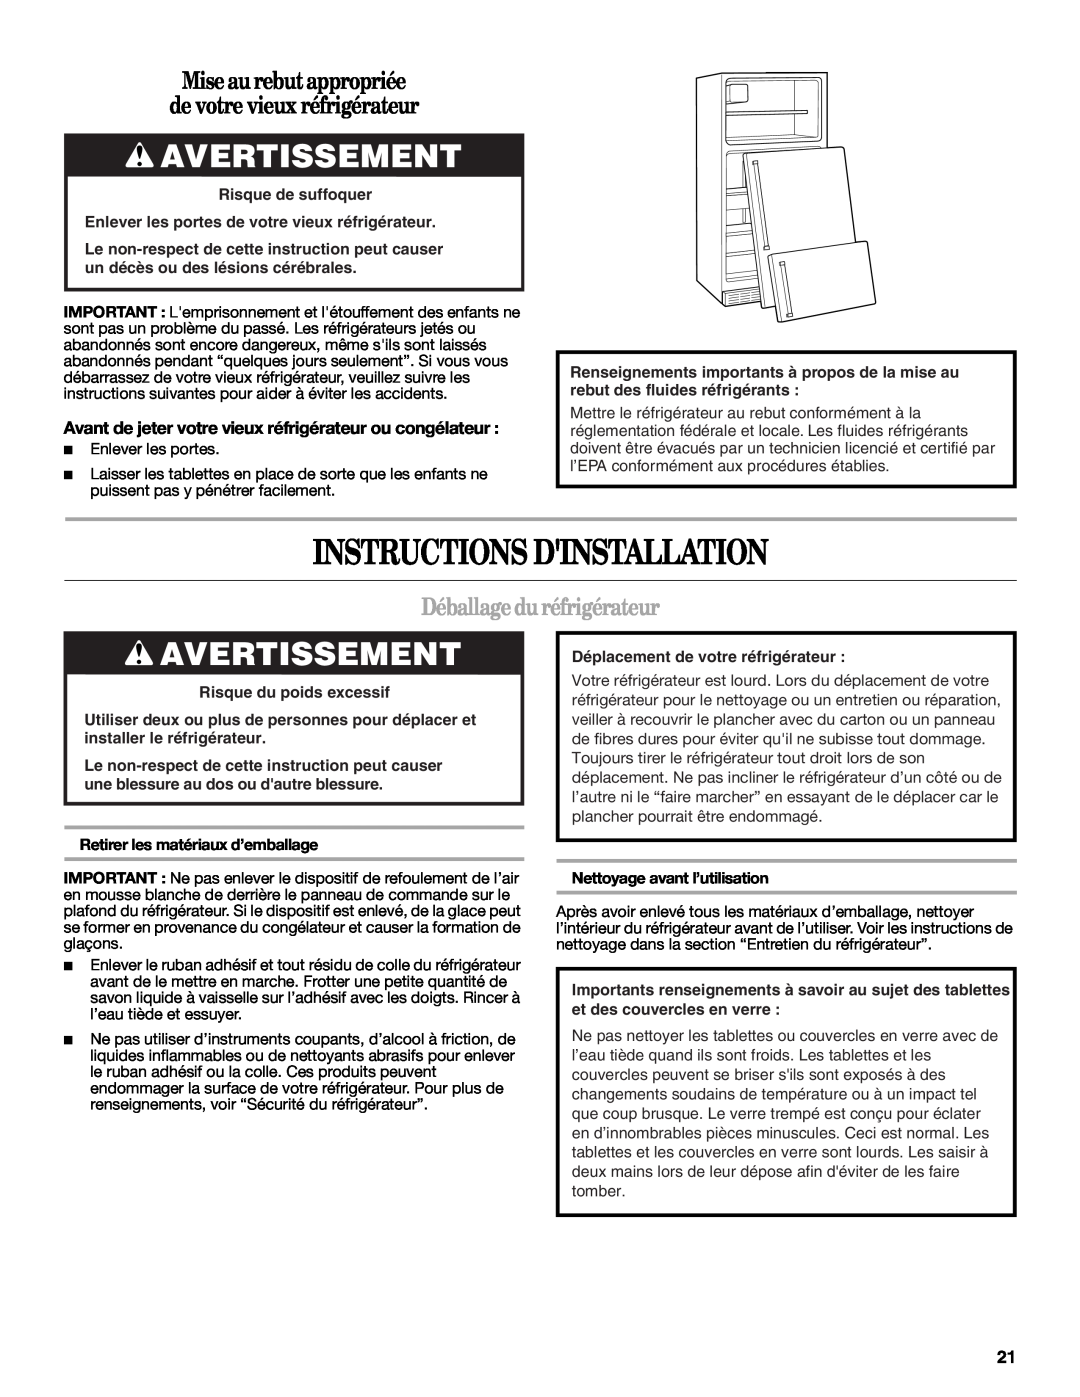 Whirlpool W10343810A Instructions Dinstallation, Avertissement, Mise aurebut appropriée, de votre vieux réfrigérateur 